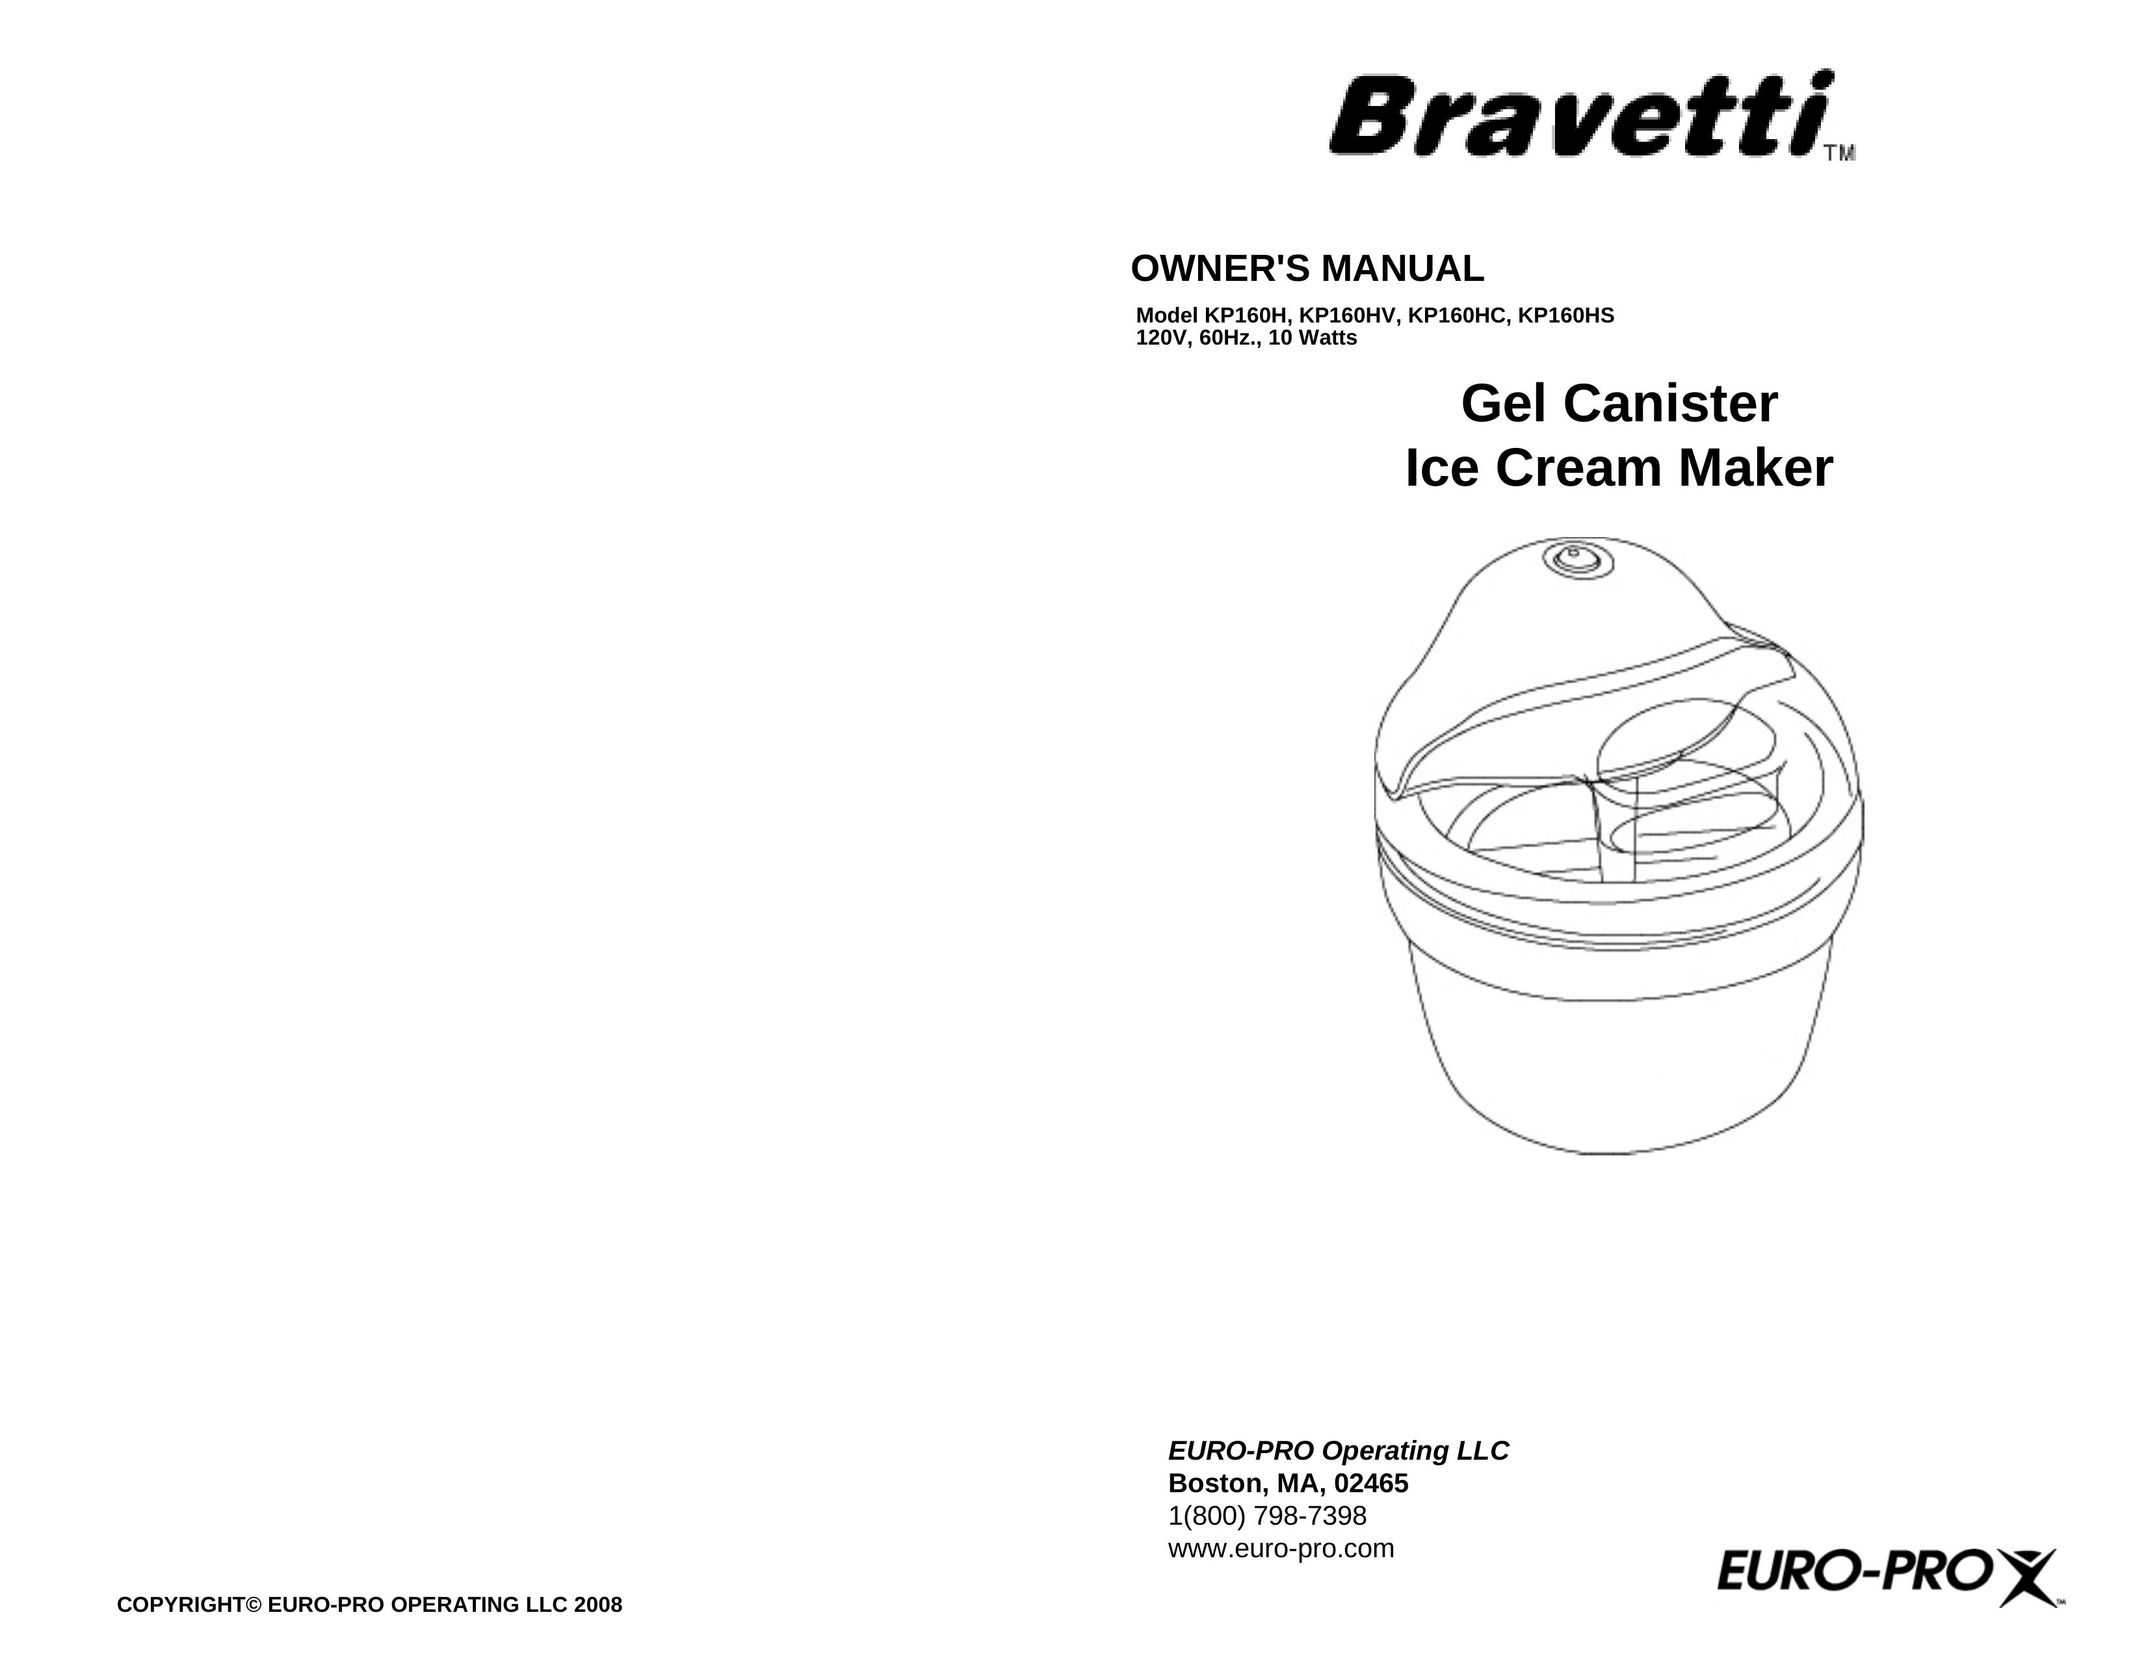 Bravetti KP160HS Frozen Dessert Maker User Manual